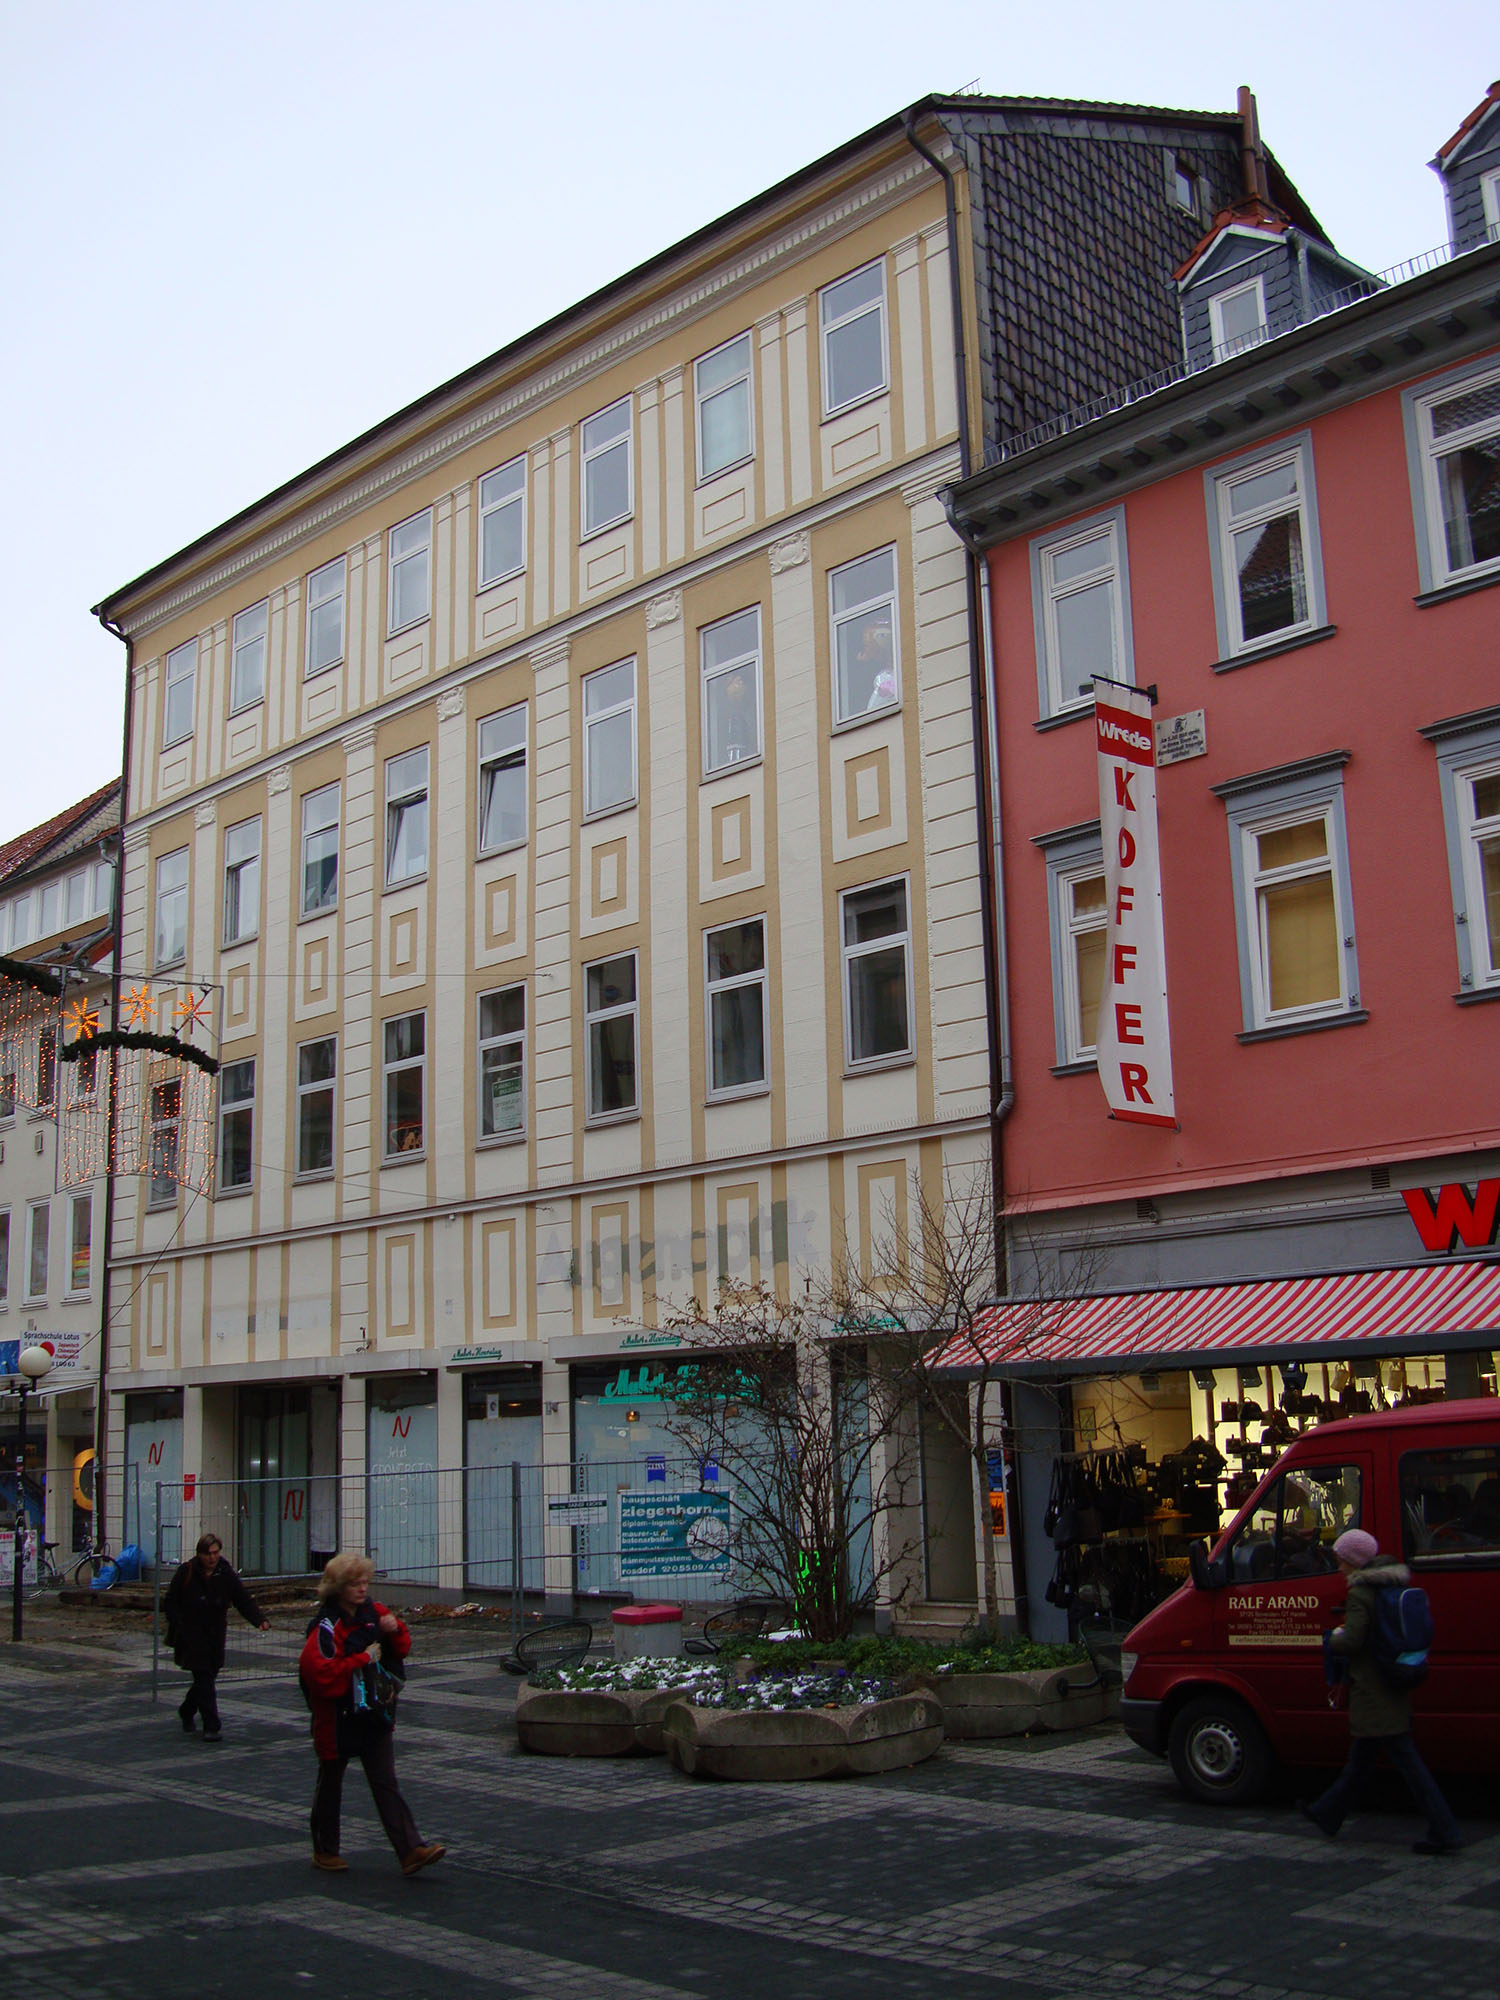 Umbau/Sanierung Wohn- und Geschäftshäuser Weender Strasse 36